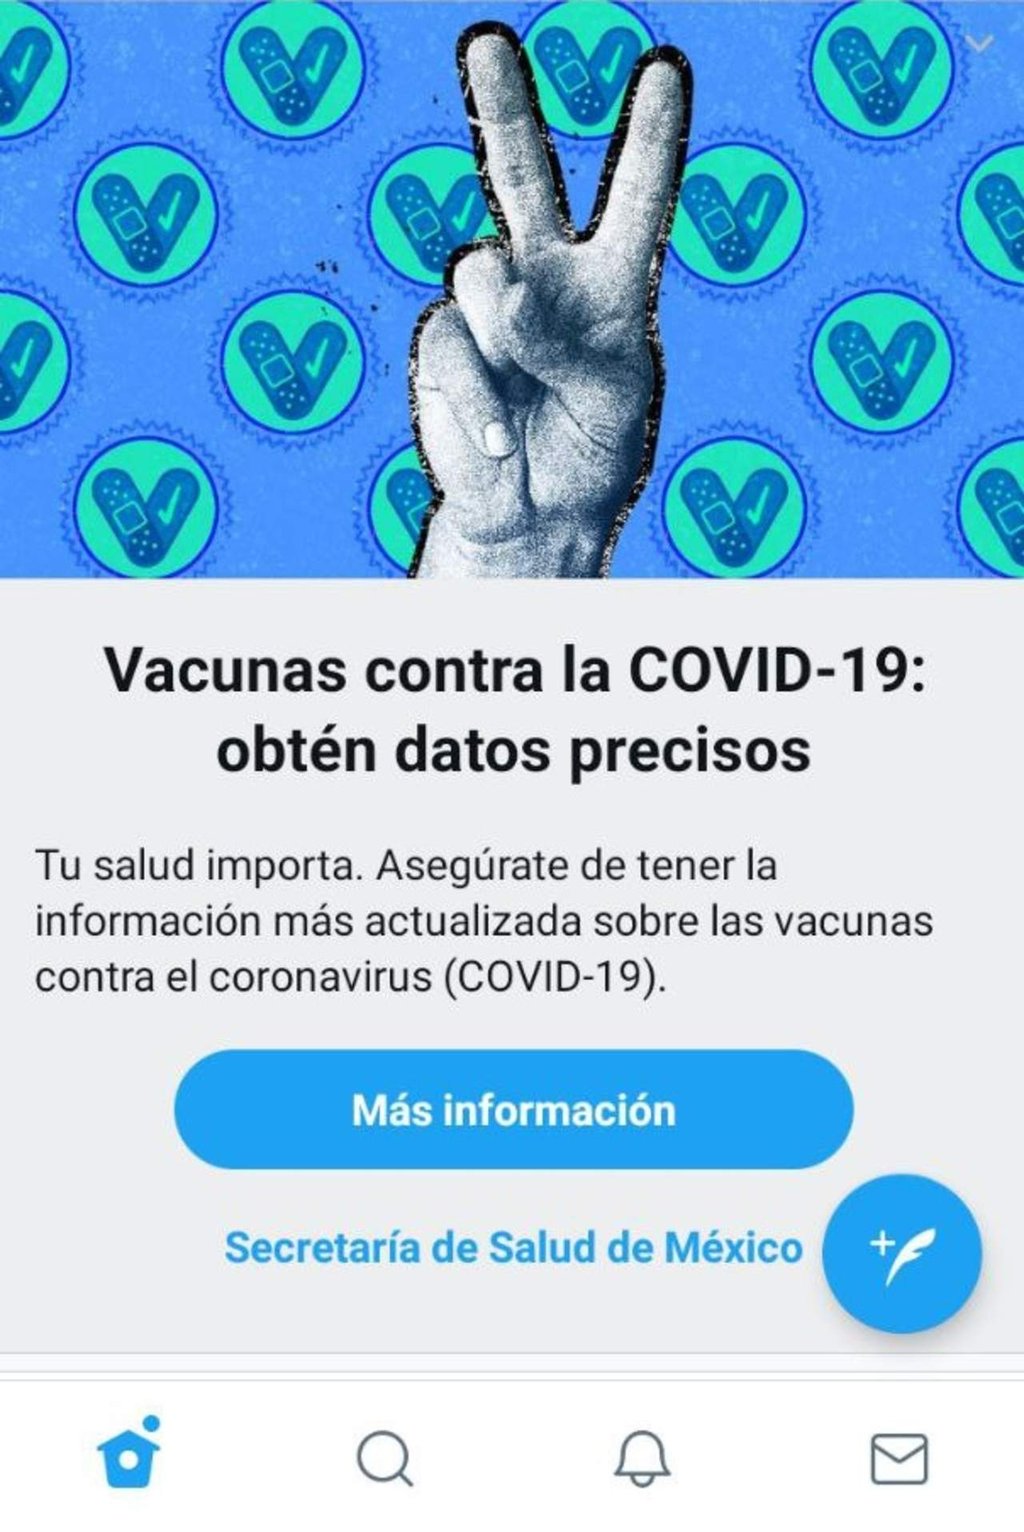 Twitter empieza a distribuir información de la vacuna antiCOVID a sus usuarios